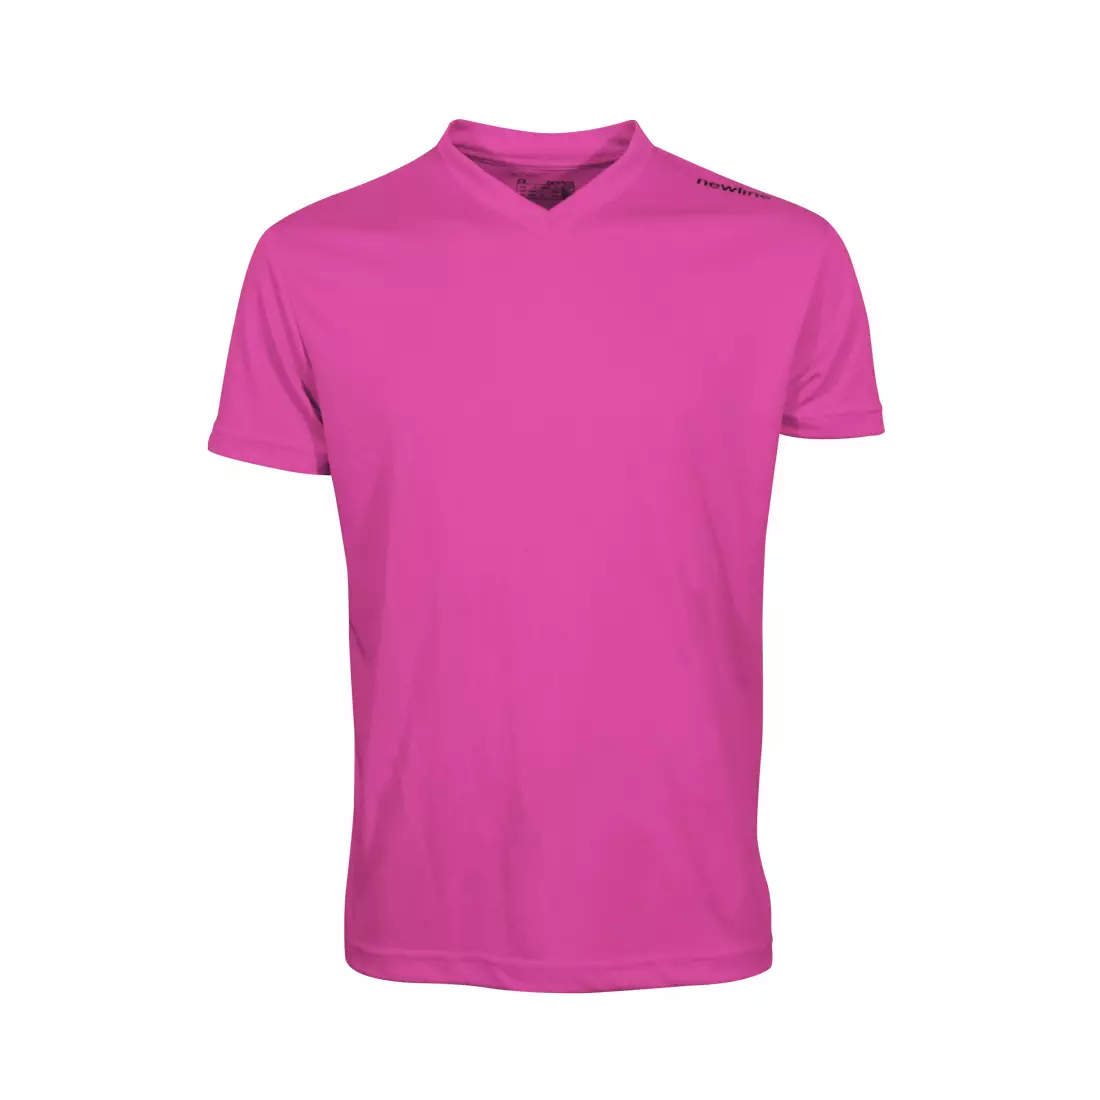 NEWLINE BASE COOL T-SHIRT - men's running T-shirt 14614-048